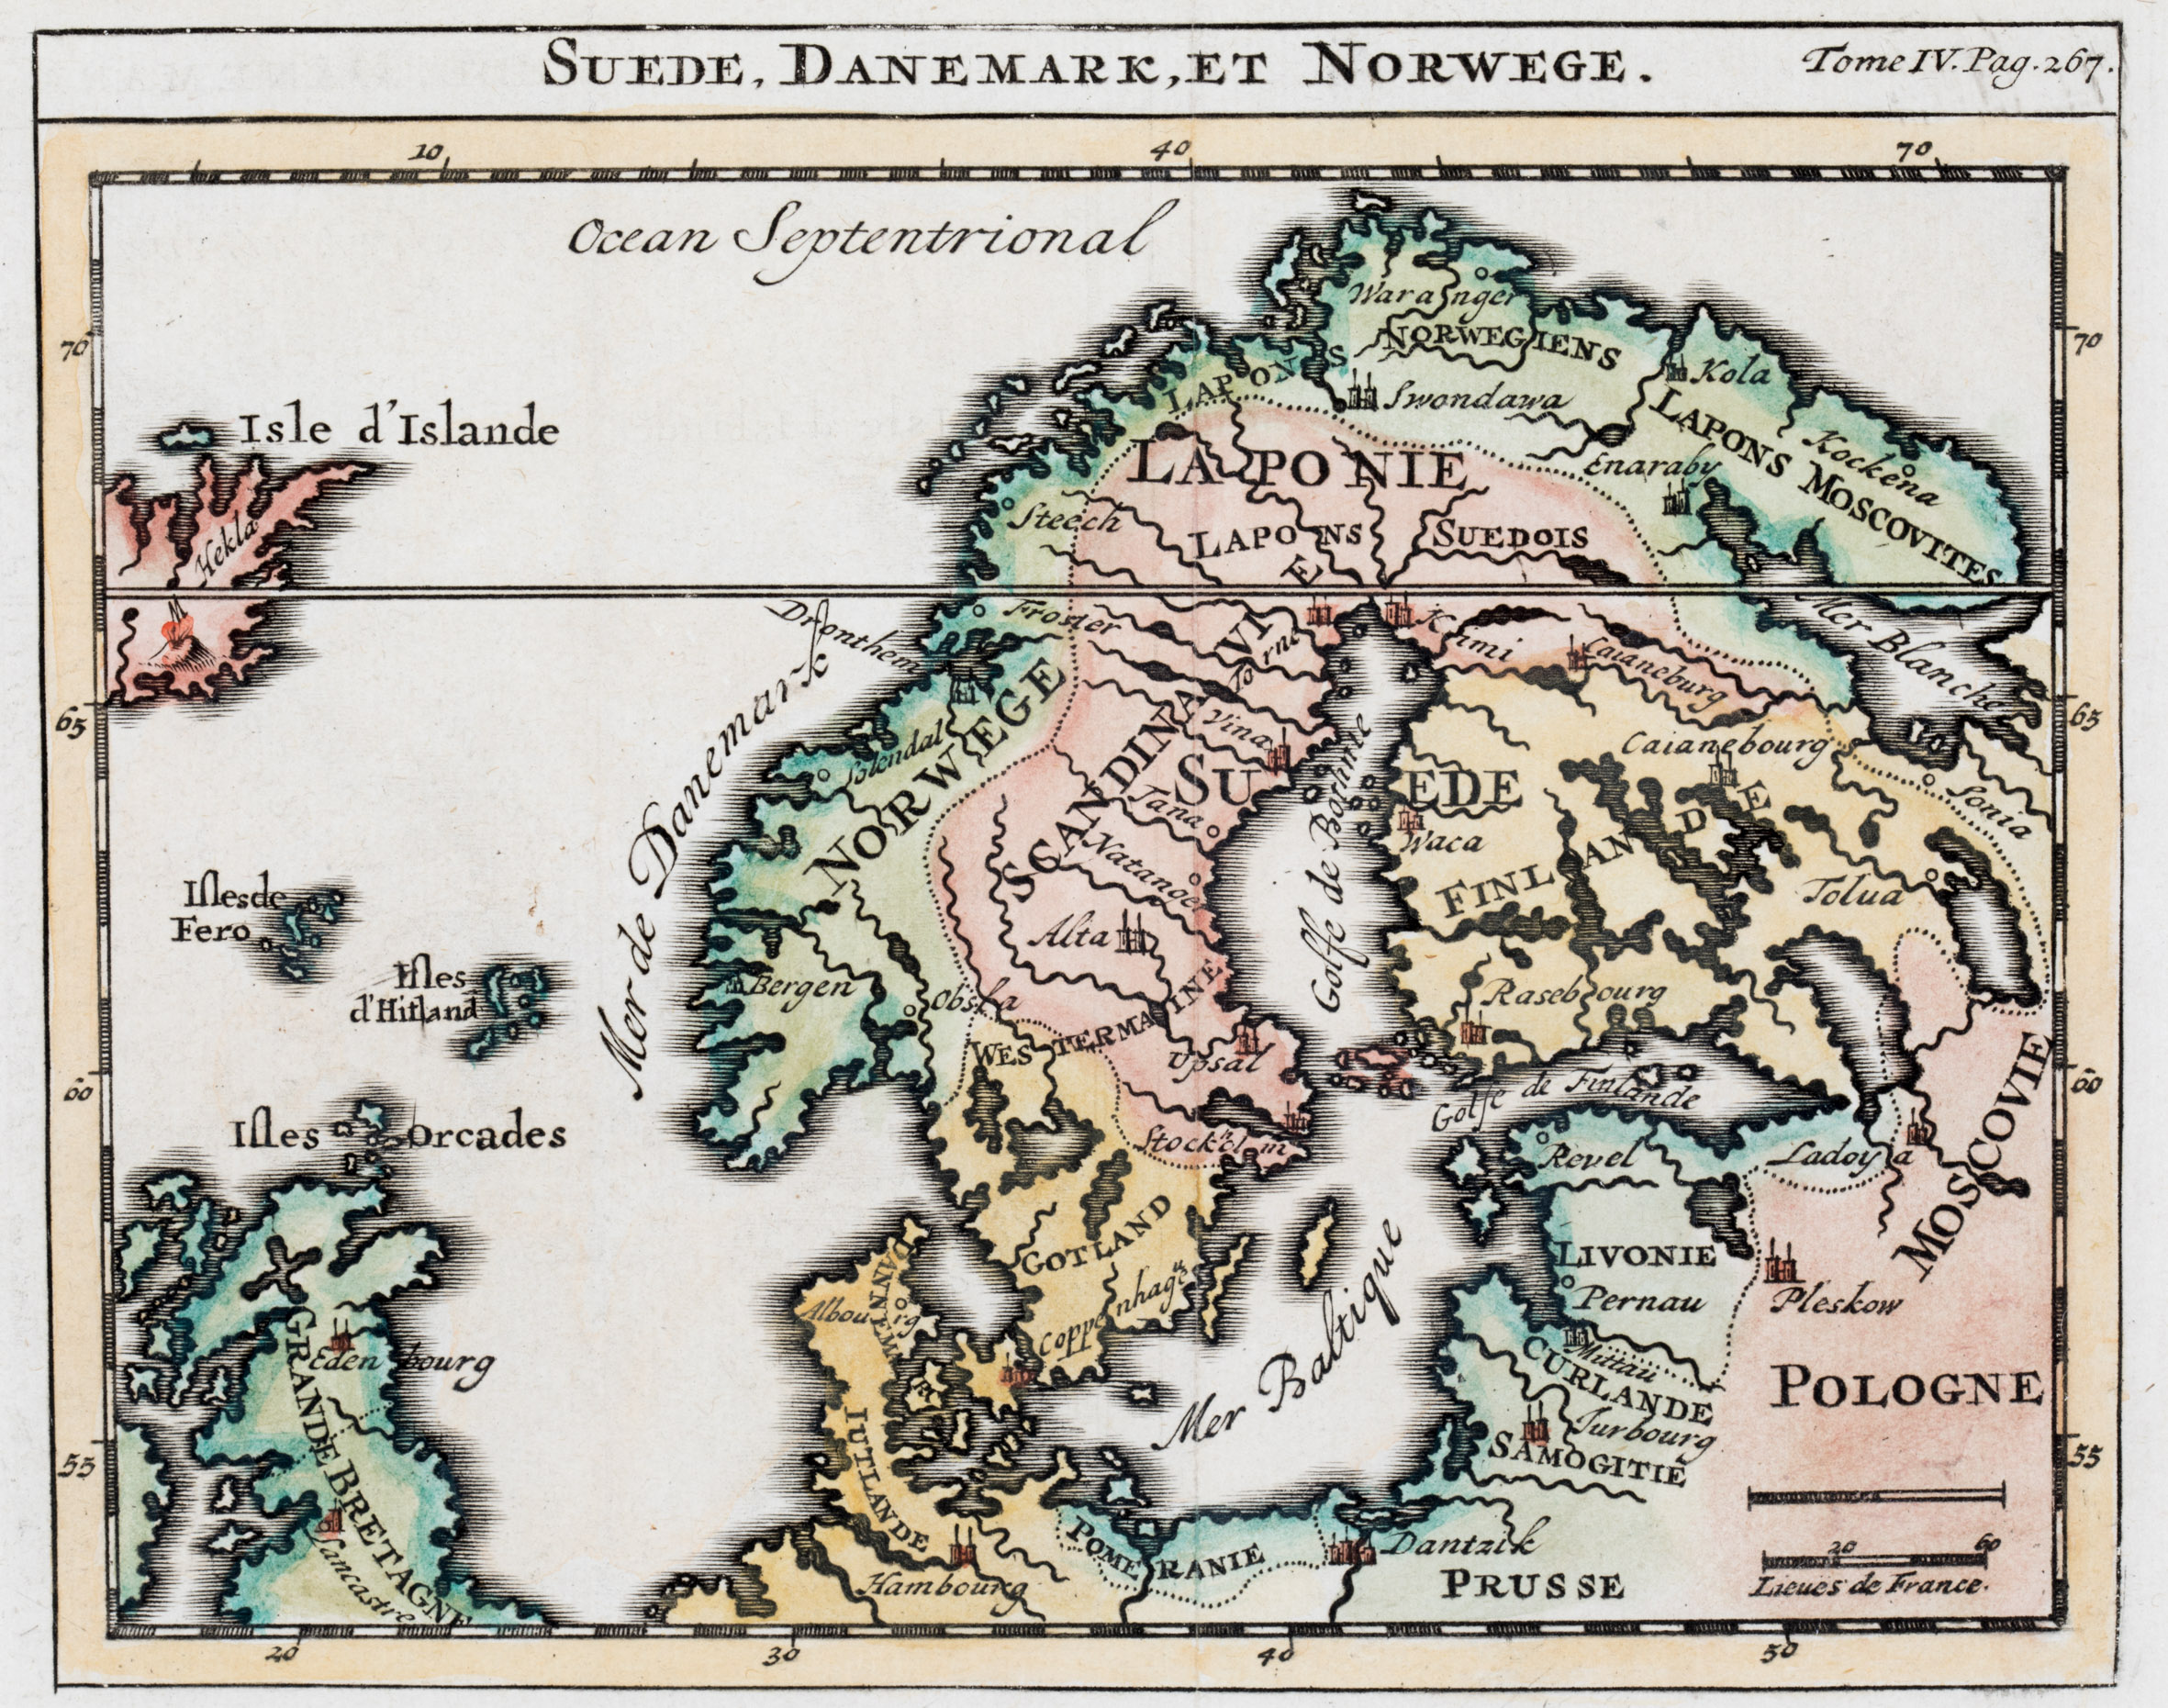 160. Suede, Danemark, et Norwege